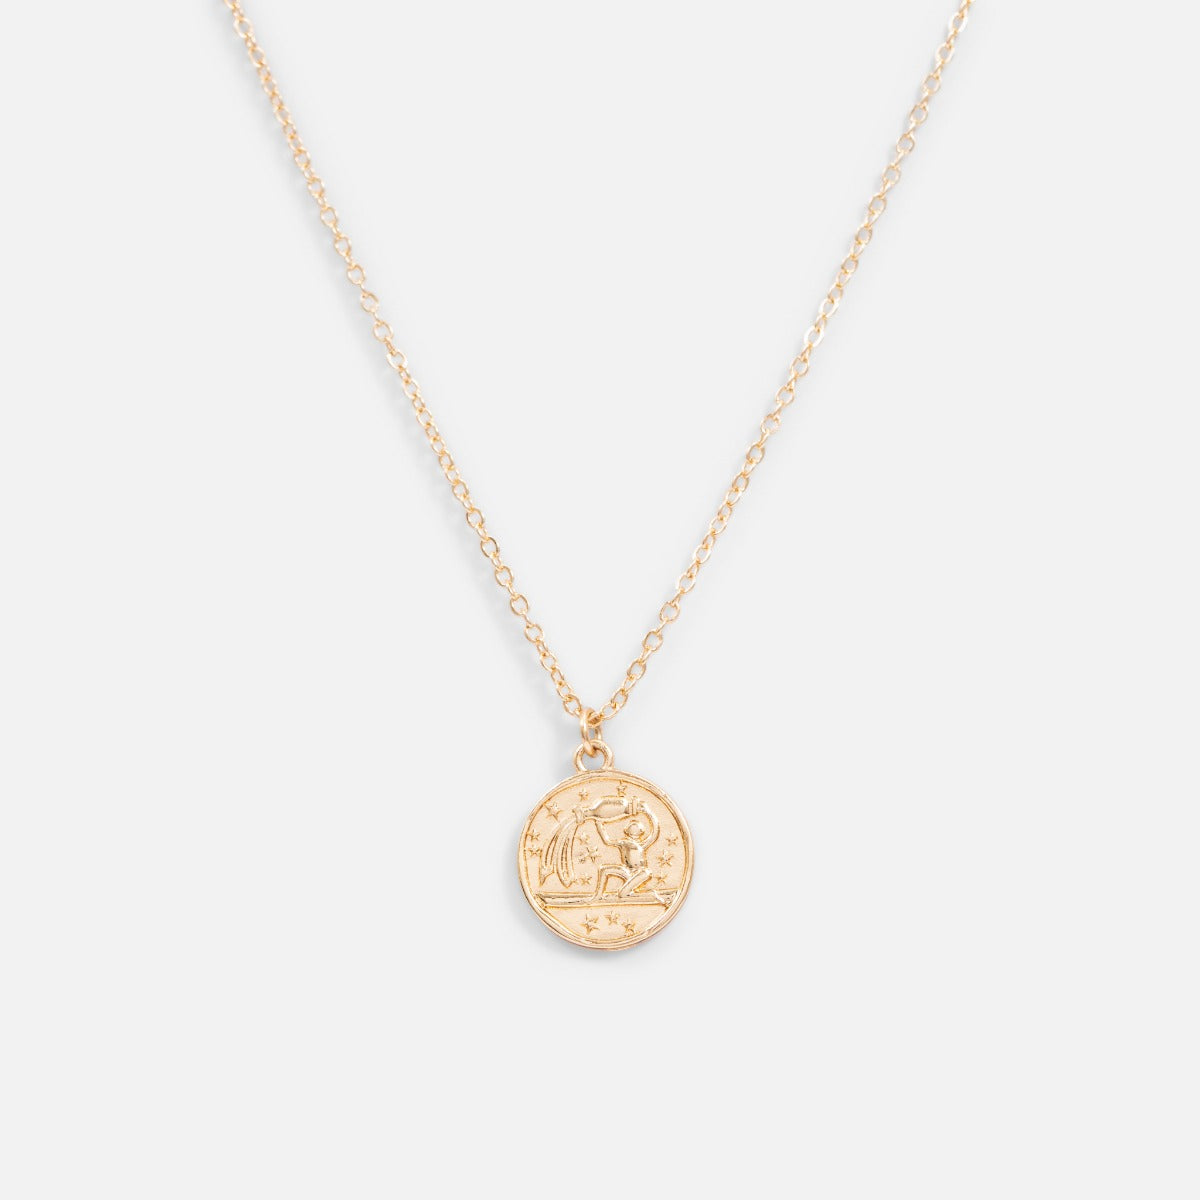 Golden pendant astrological sign " aquarius "